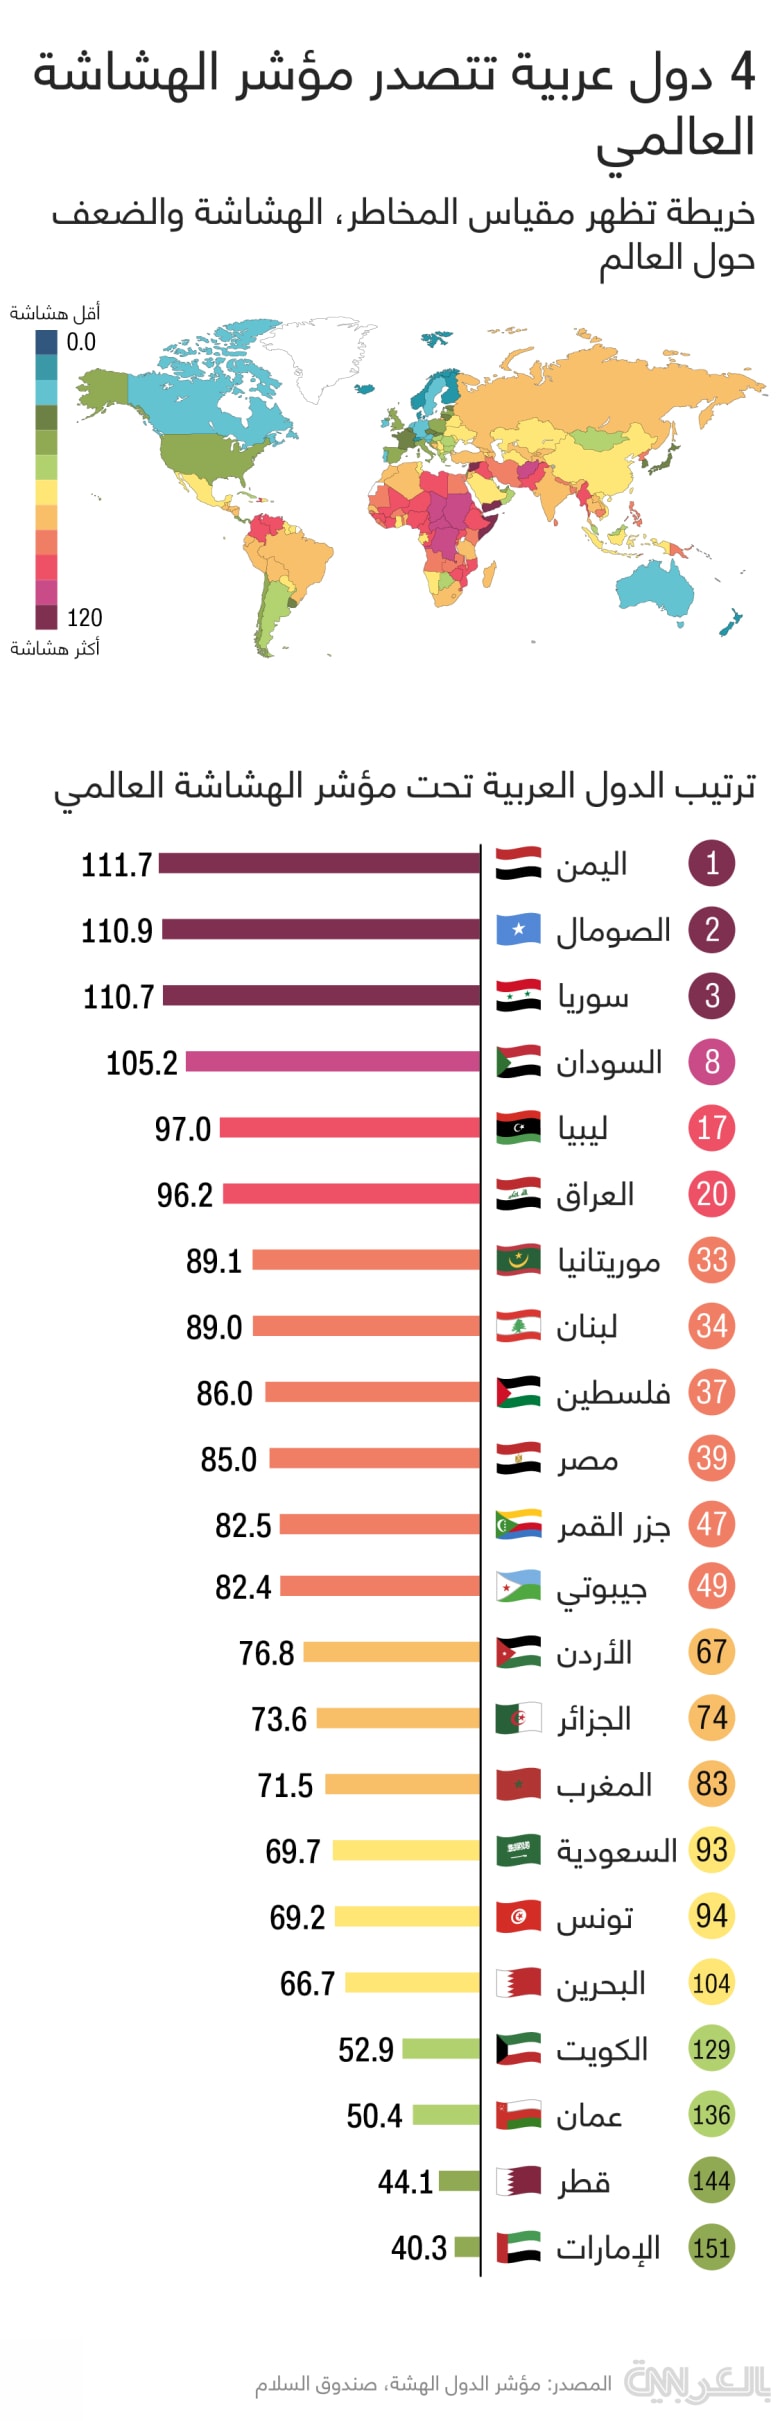 Arab-Fragile-States-Index-2021